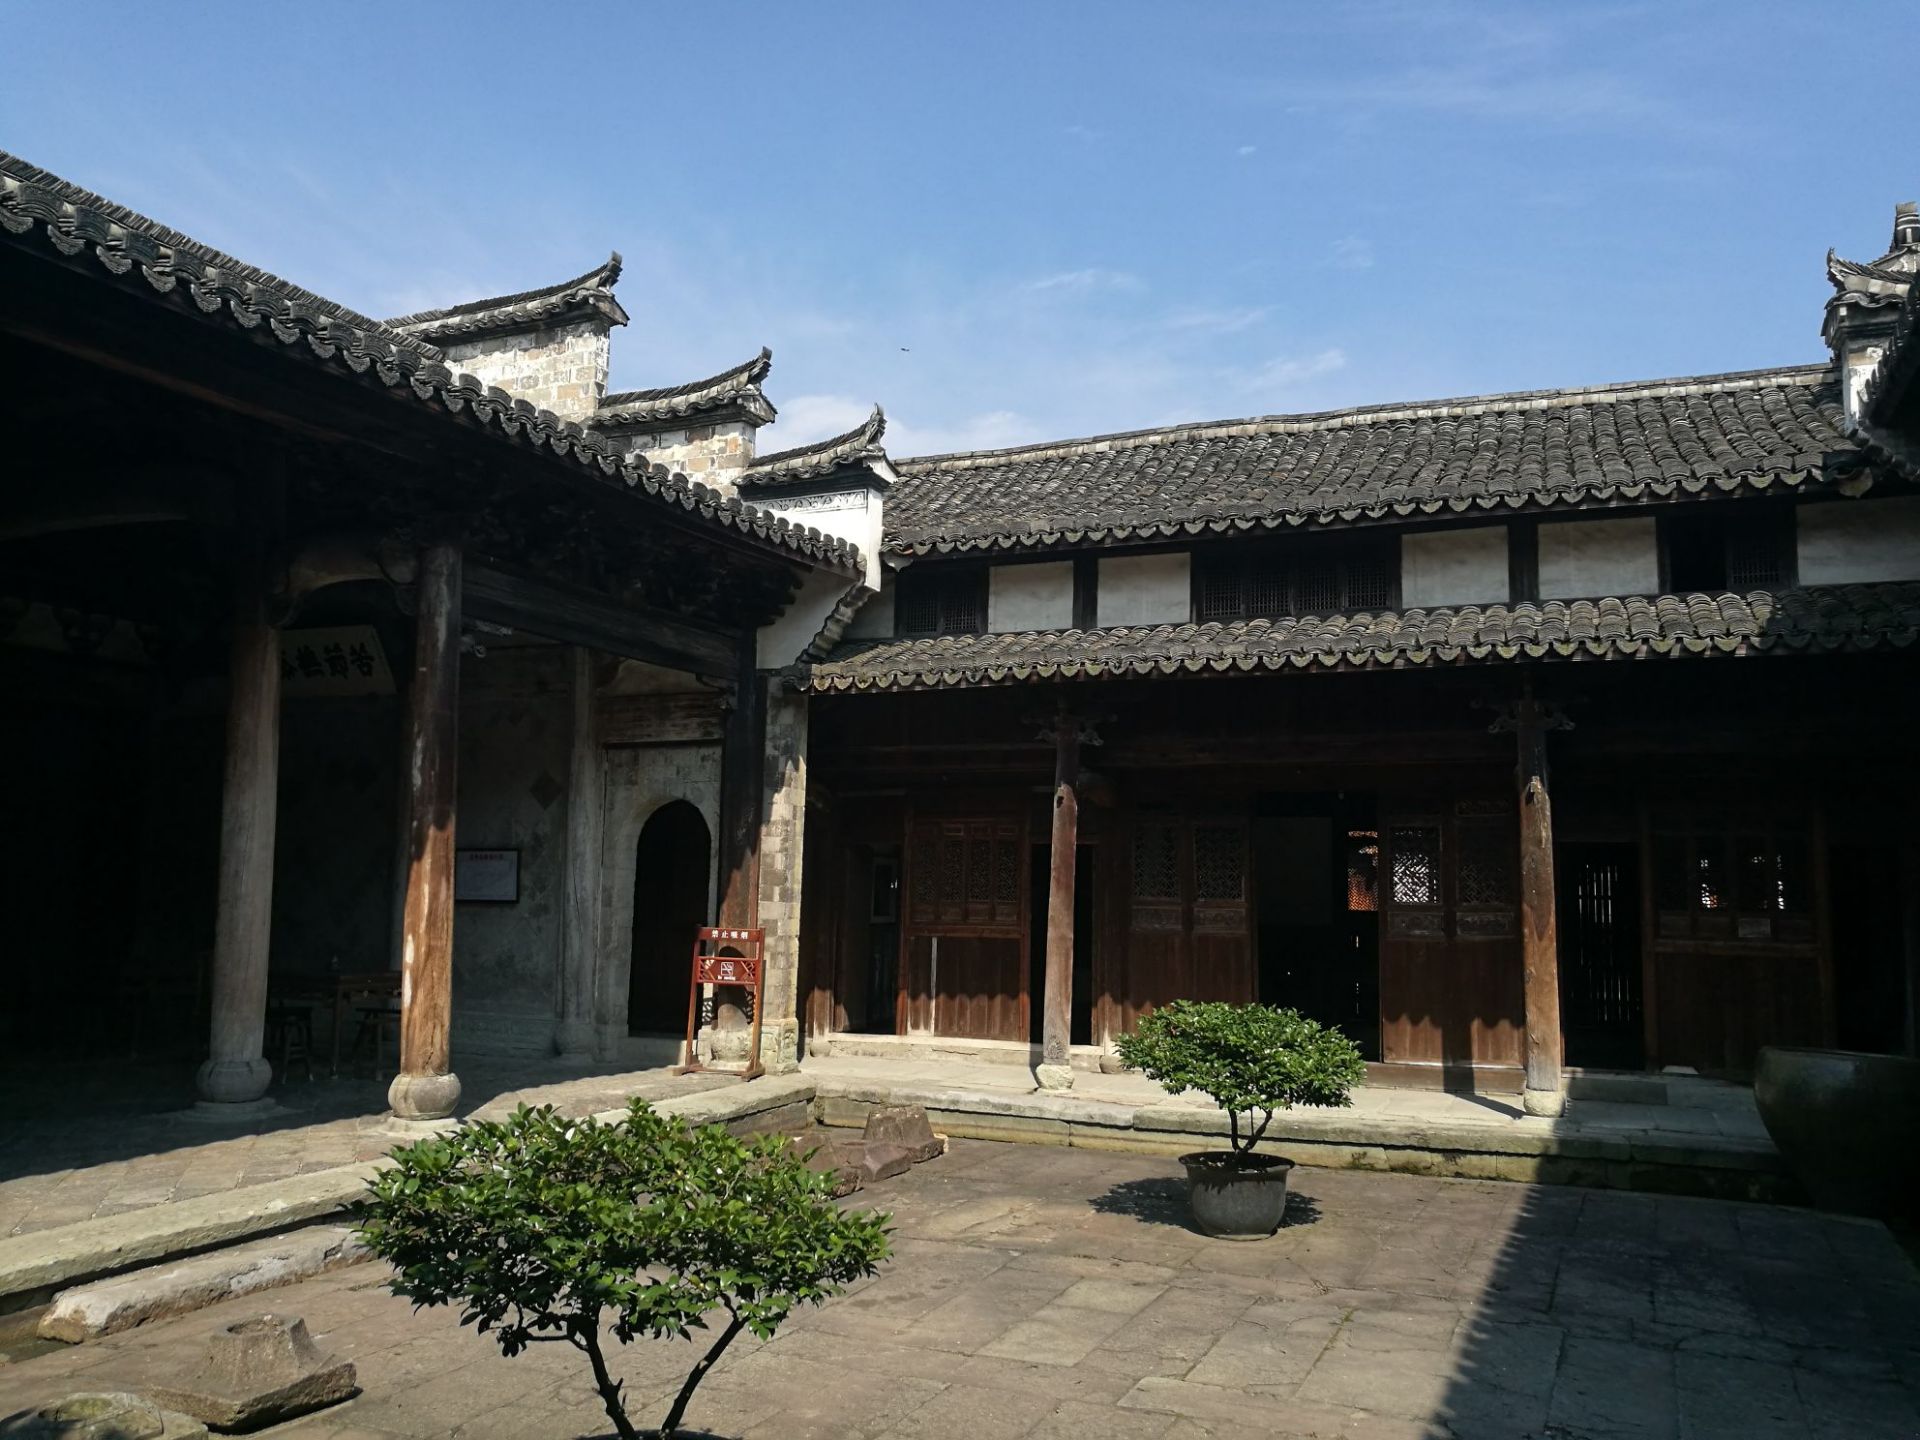 东阳卢宅:中国古代民居建筑,位于浙江省东阳市东郊卢宅村,卢氏自宋代